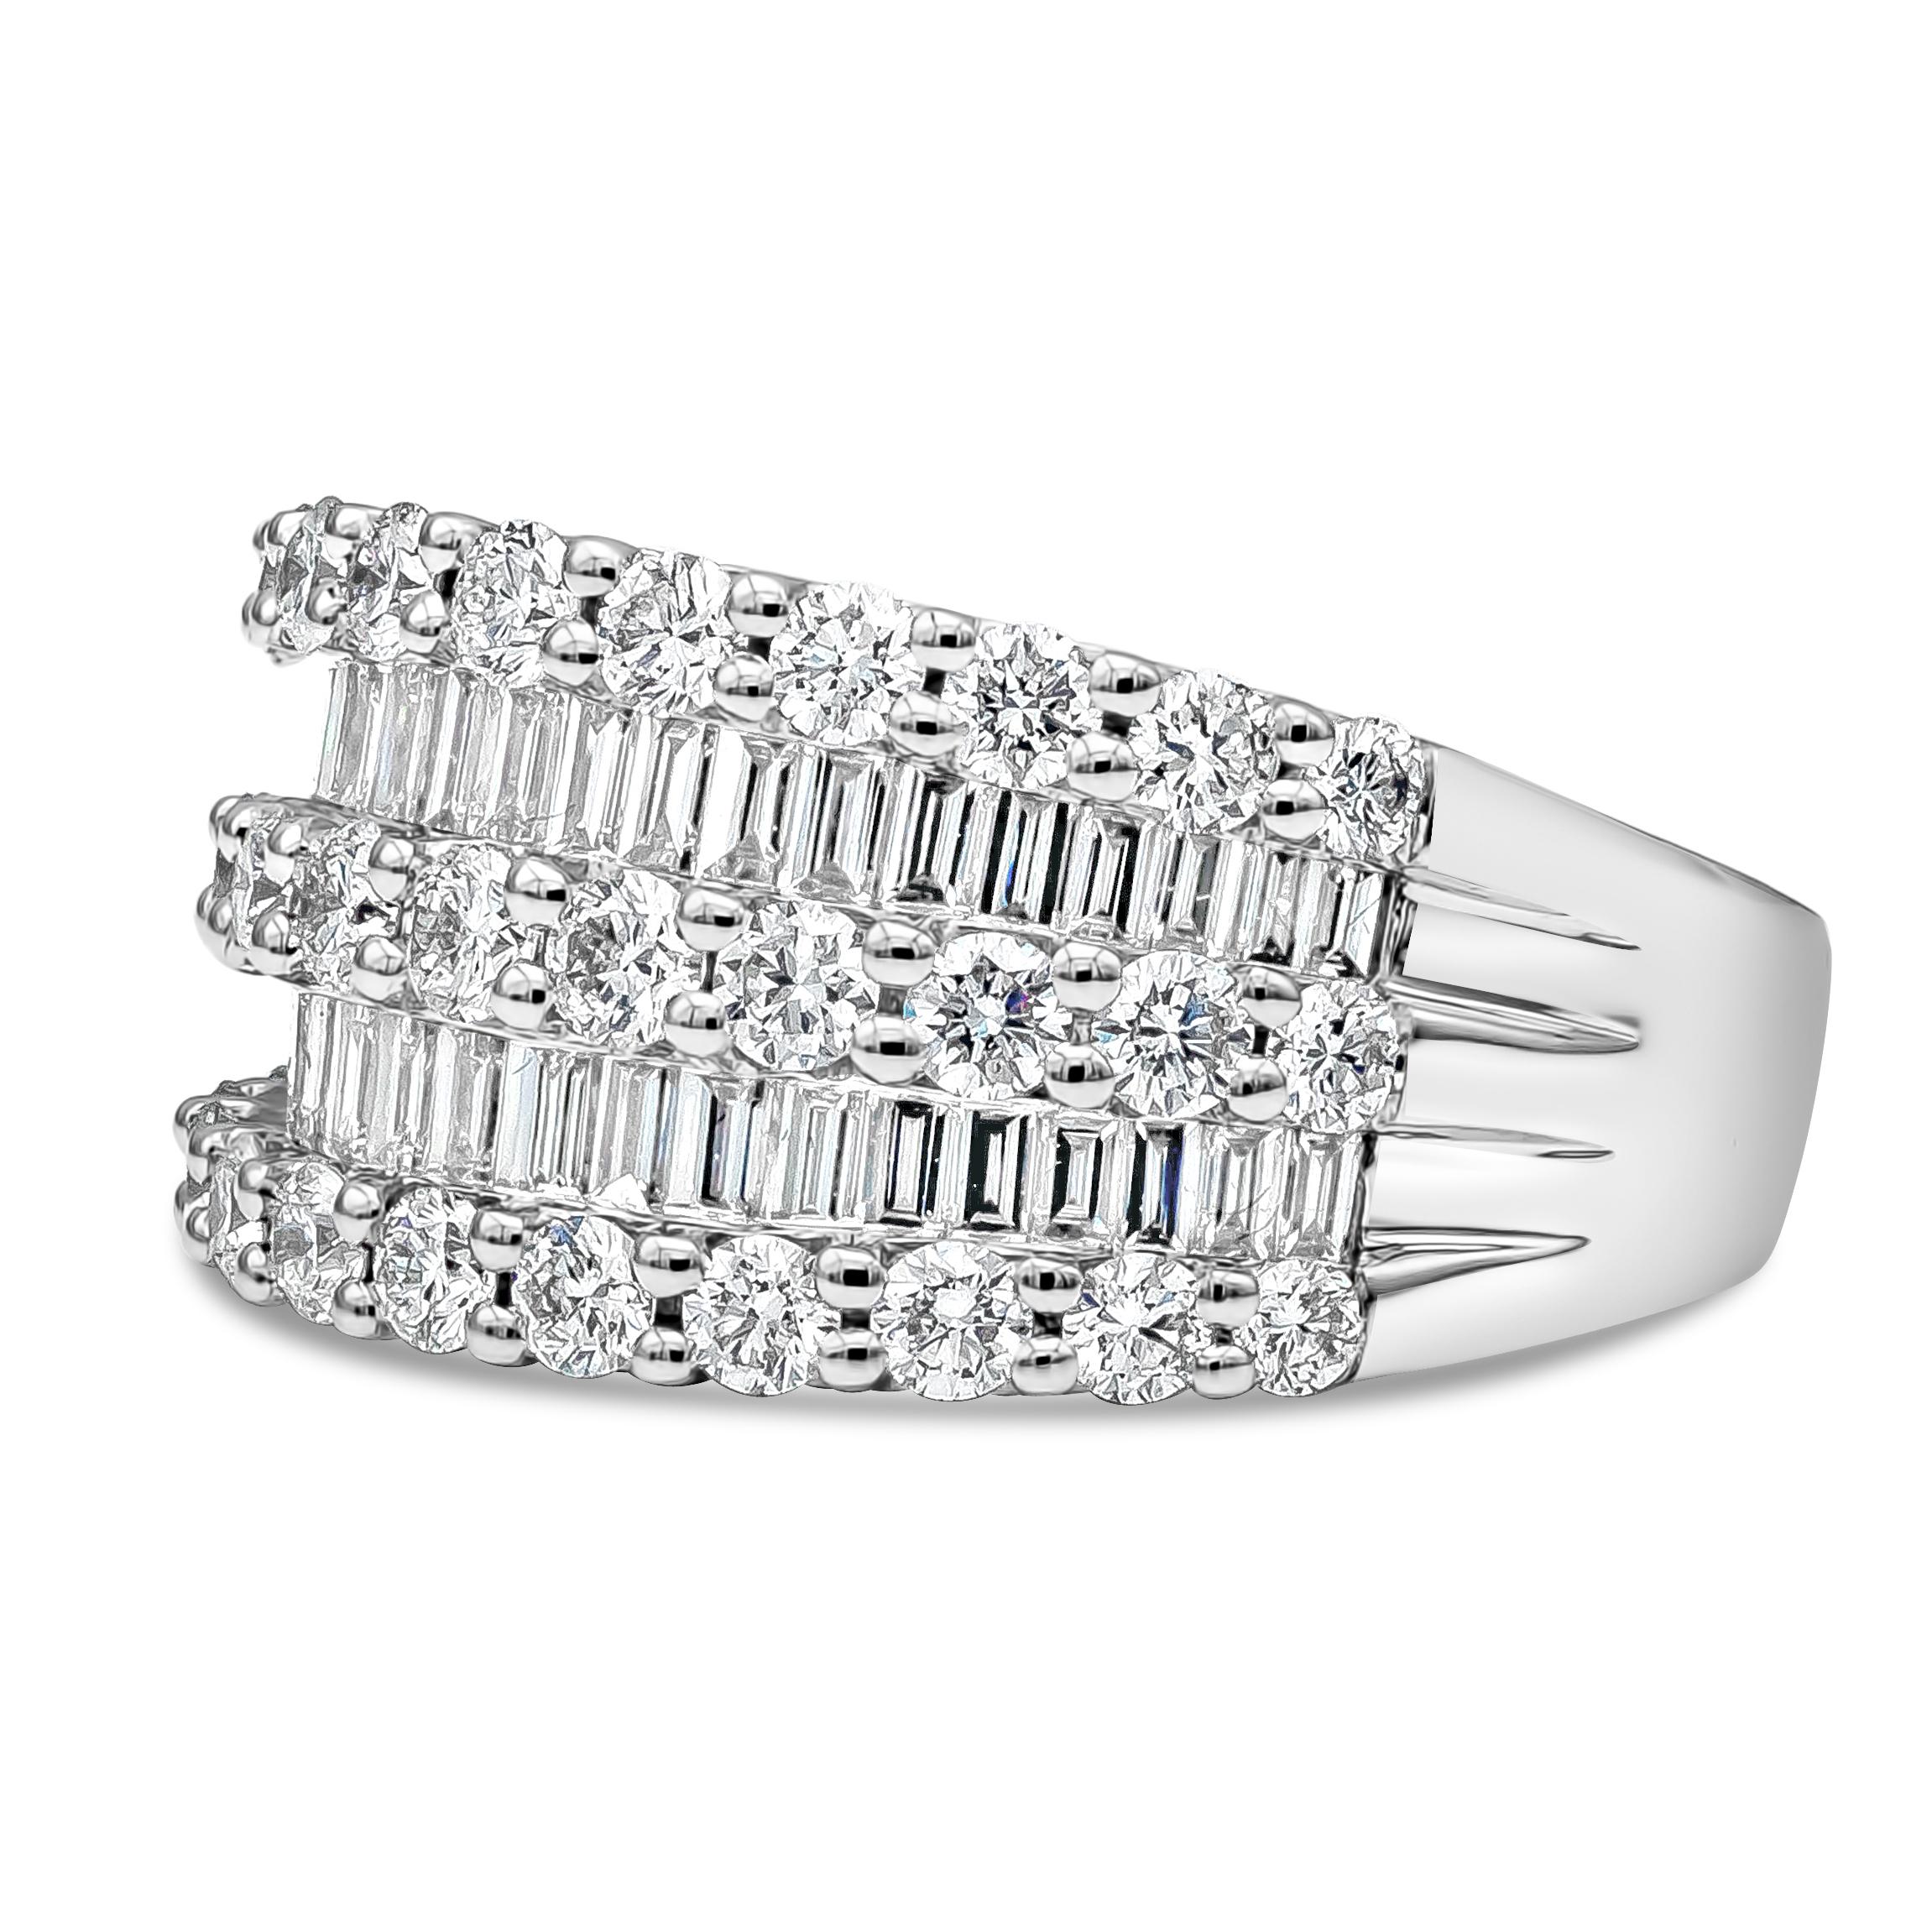 Ein zeitloser und modischer breiter Ring mit 40 Baguette-Diamanten, die elegant in der Größe von ca. 9 mm bis 11,15 mm abgestuft sind.  33 brillante runde Diamanten. Baguette-Diamanten wiegen insgesamt 0,85 Karat, Farbe F und Reinheit VS. Runde